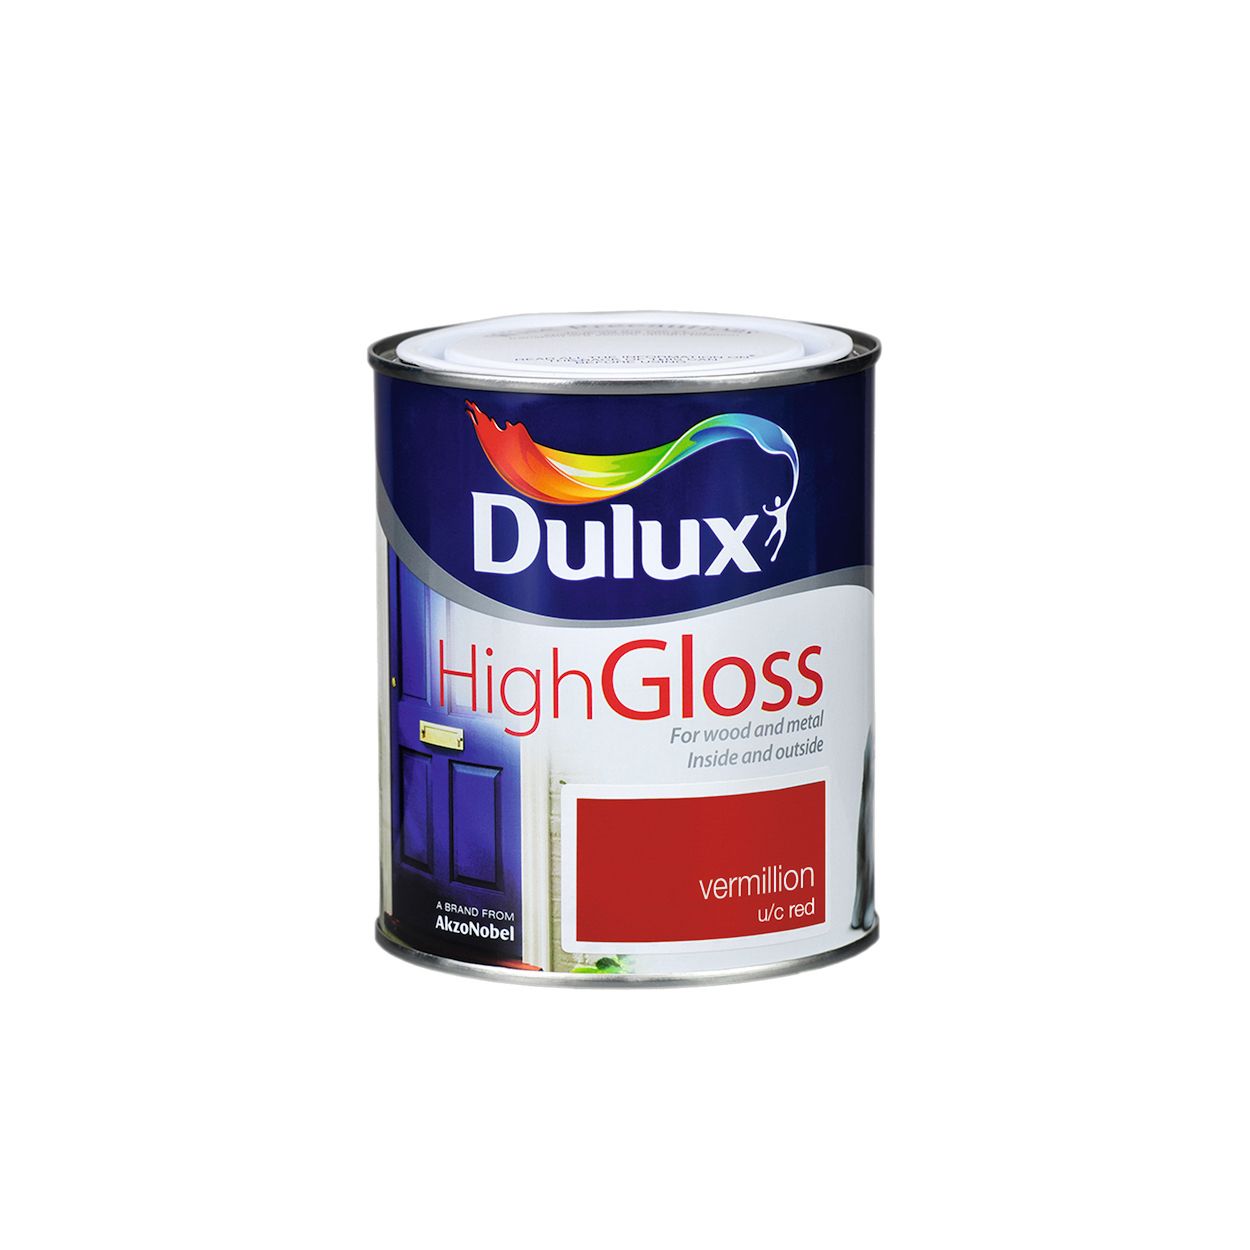 Dulux High Gloss - Vermillion